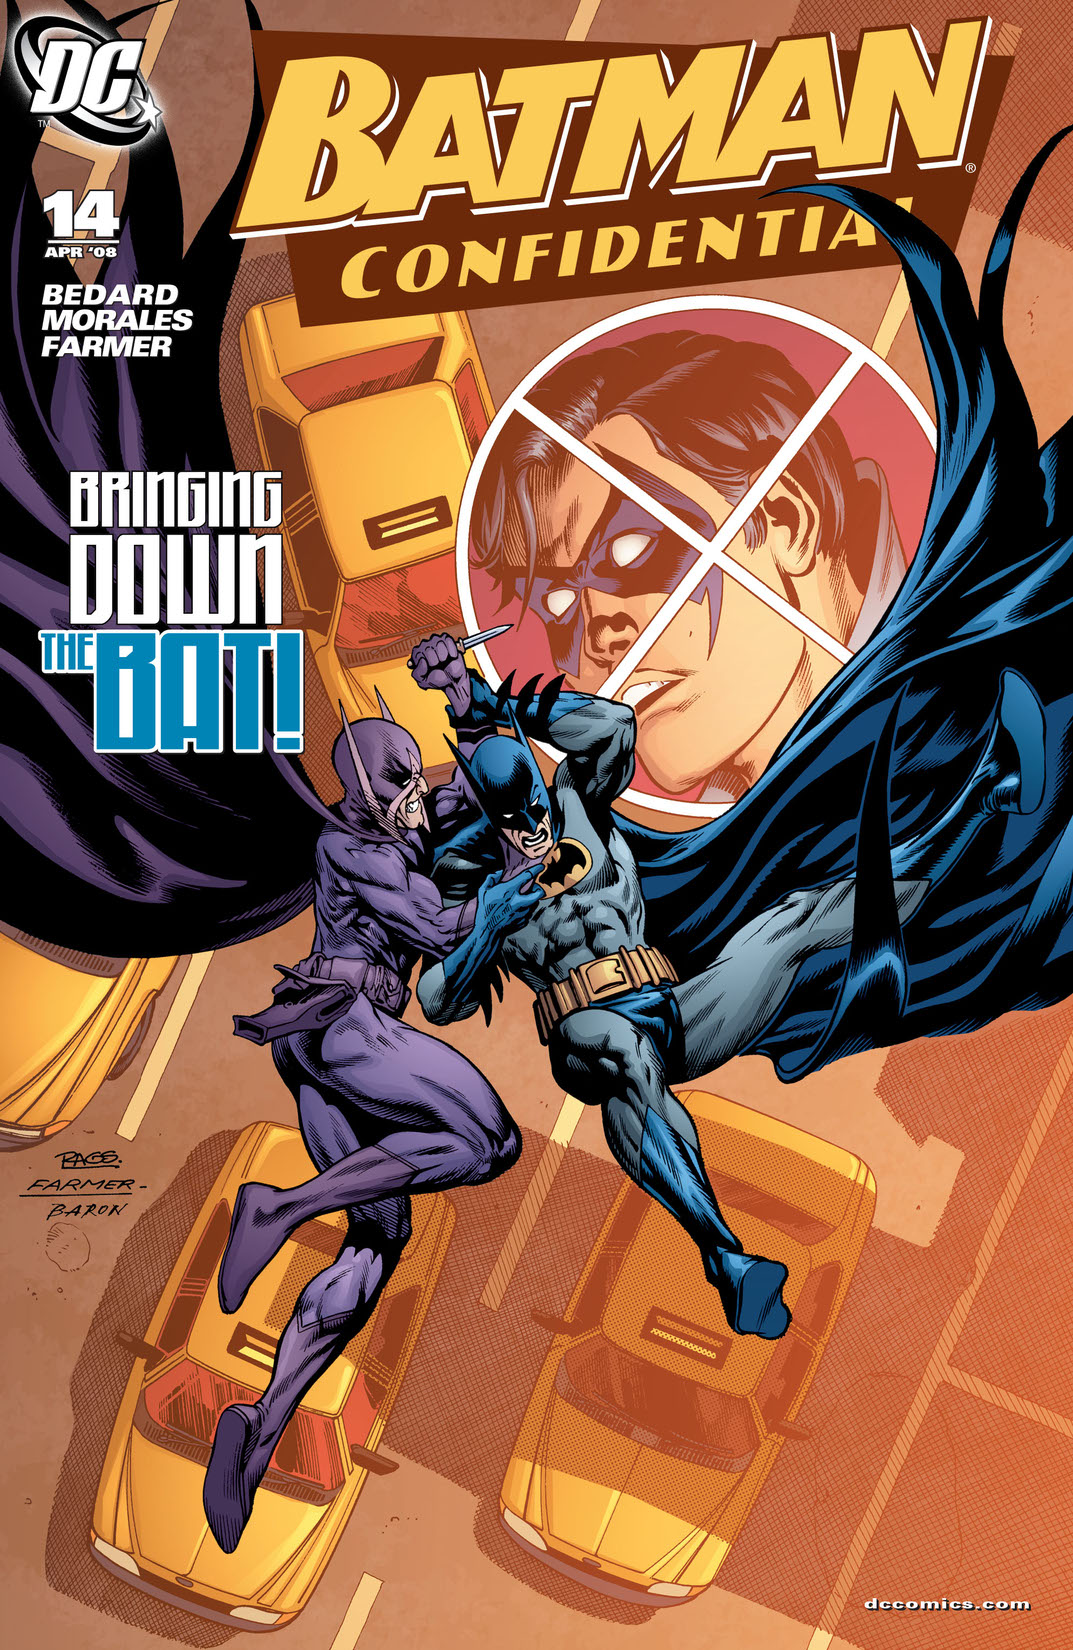 Batman Confidential #14 preview images